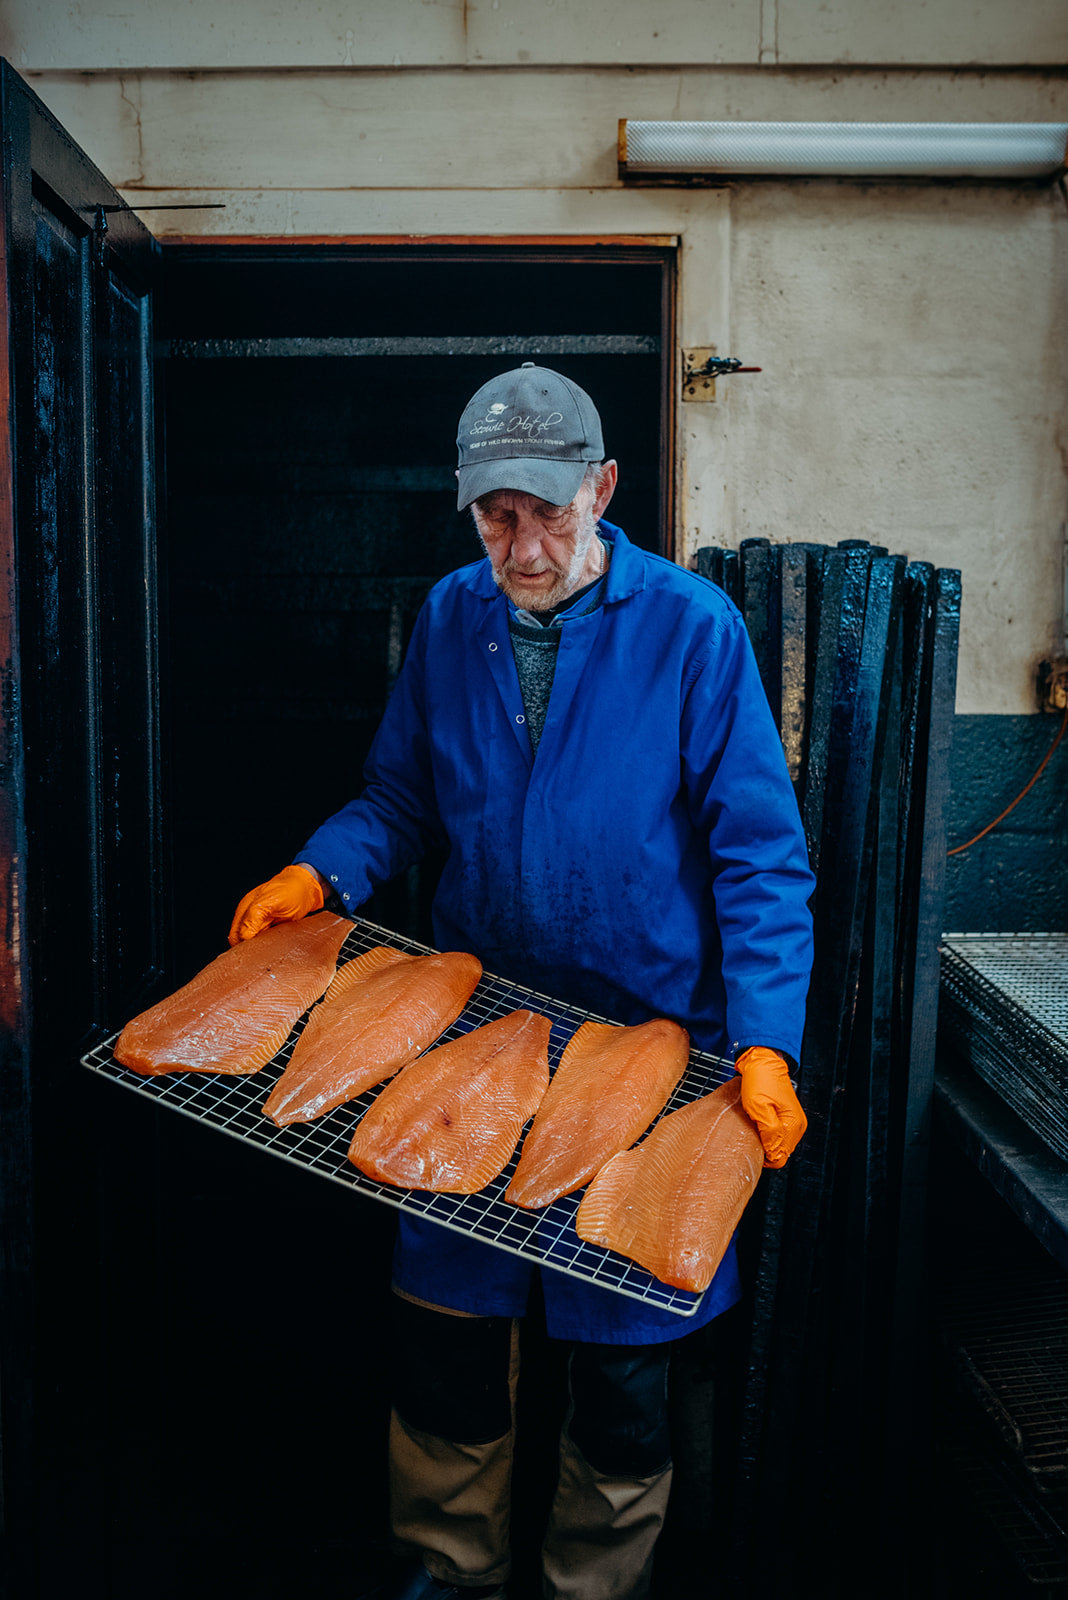 Smoked salmon from the kiln, Ullapool Smokehouse - Pesky